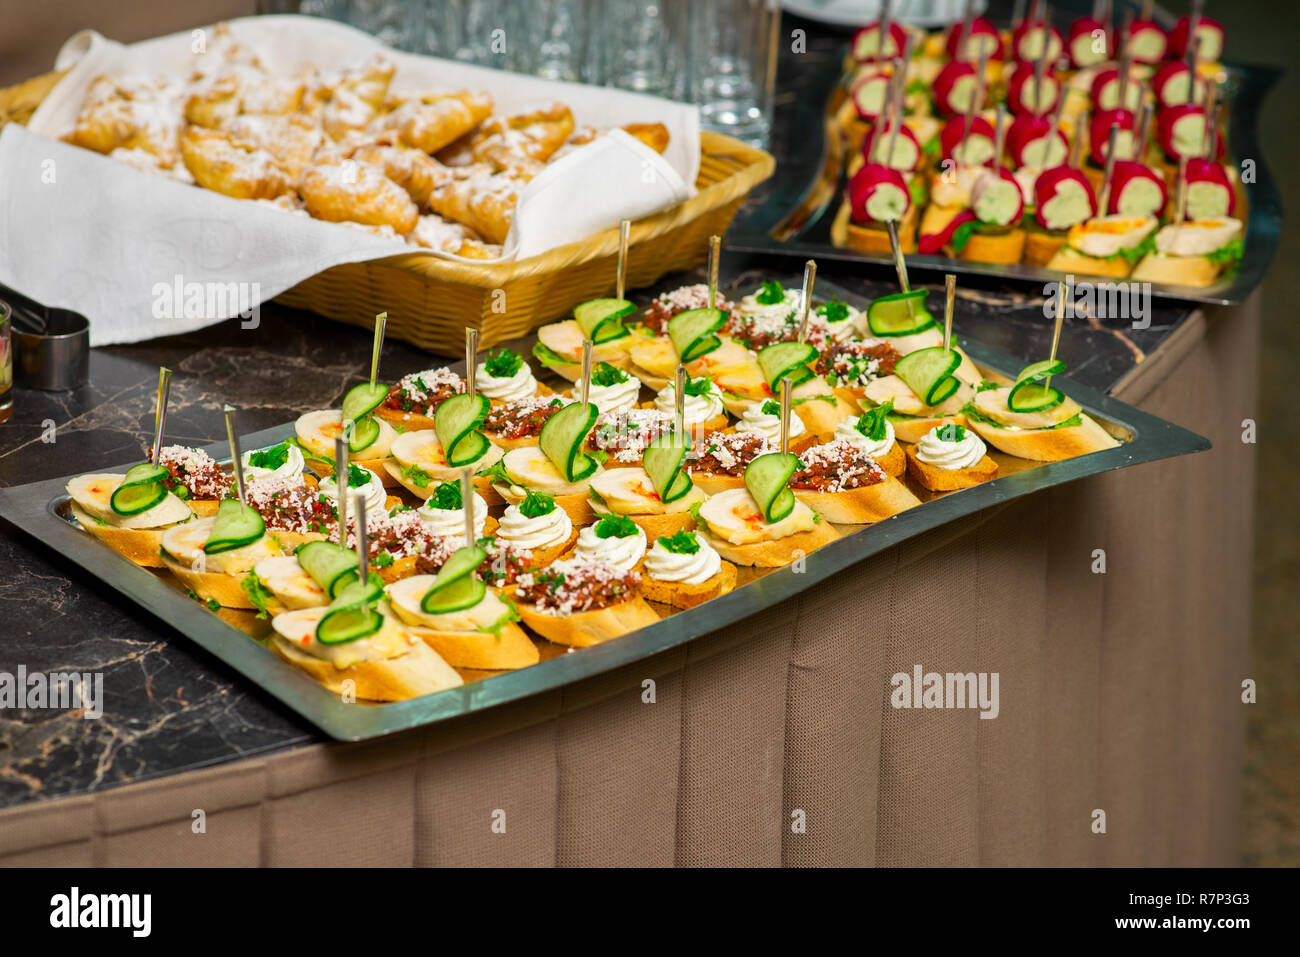 Häppchen und kalte Vorspeisen auf dem Buffet, Fleisch, Gemüse und Kräuter  auf einem Tablett Stockfotografie - Alamy